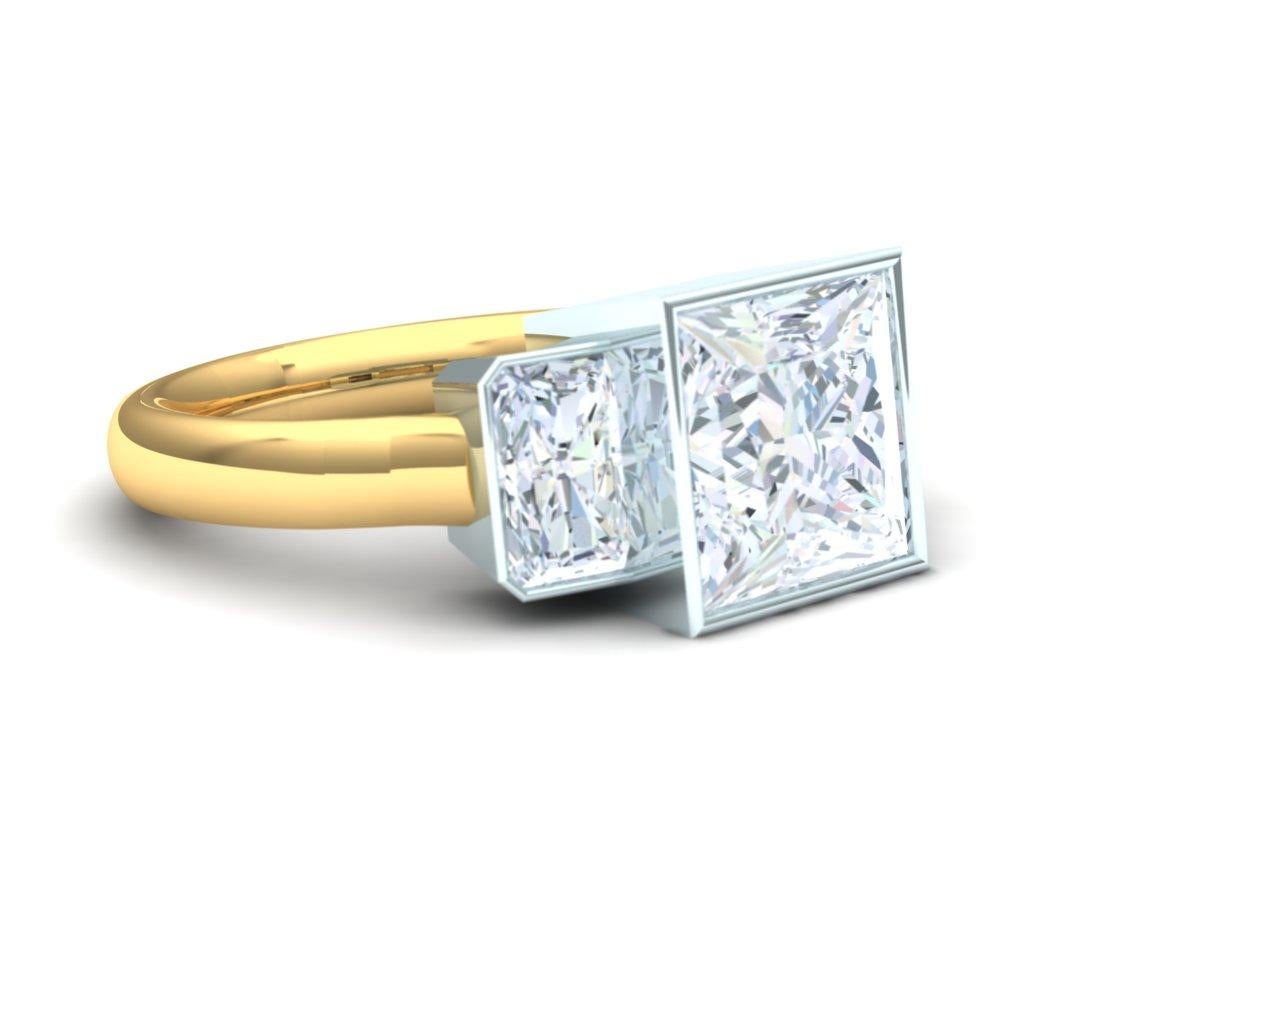 2.5 carat princess cut diamond